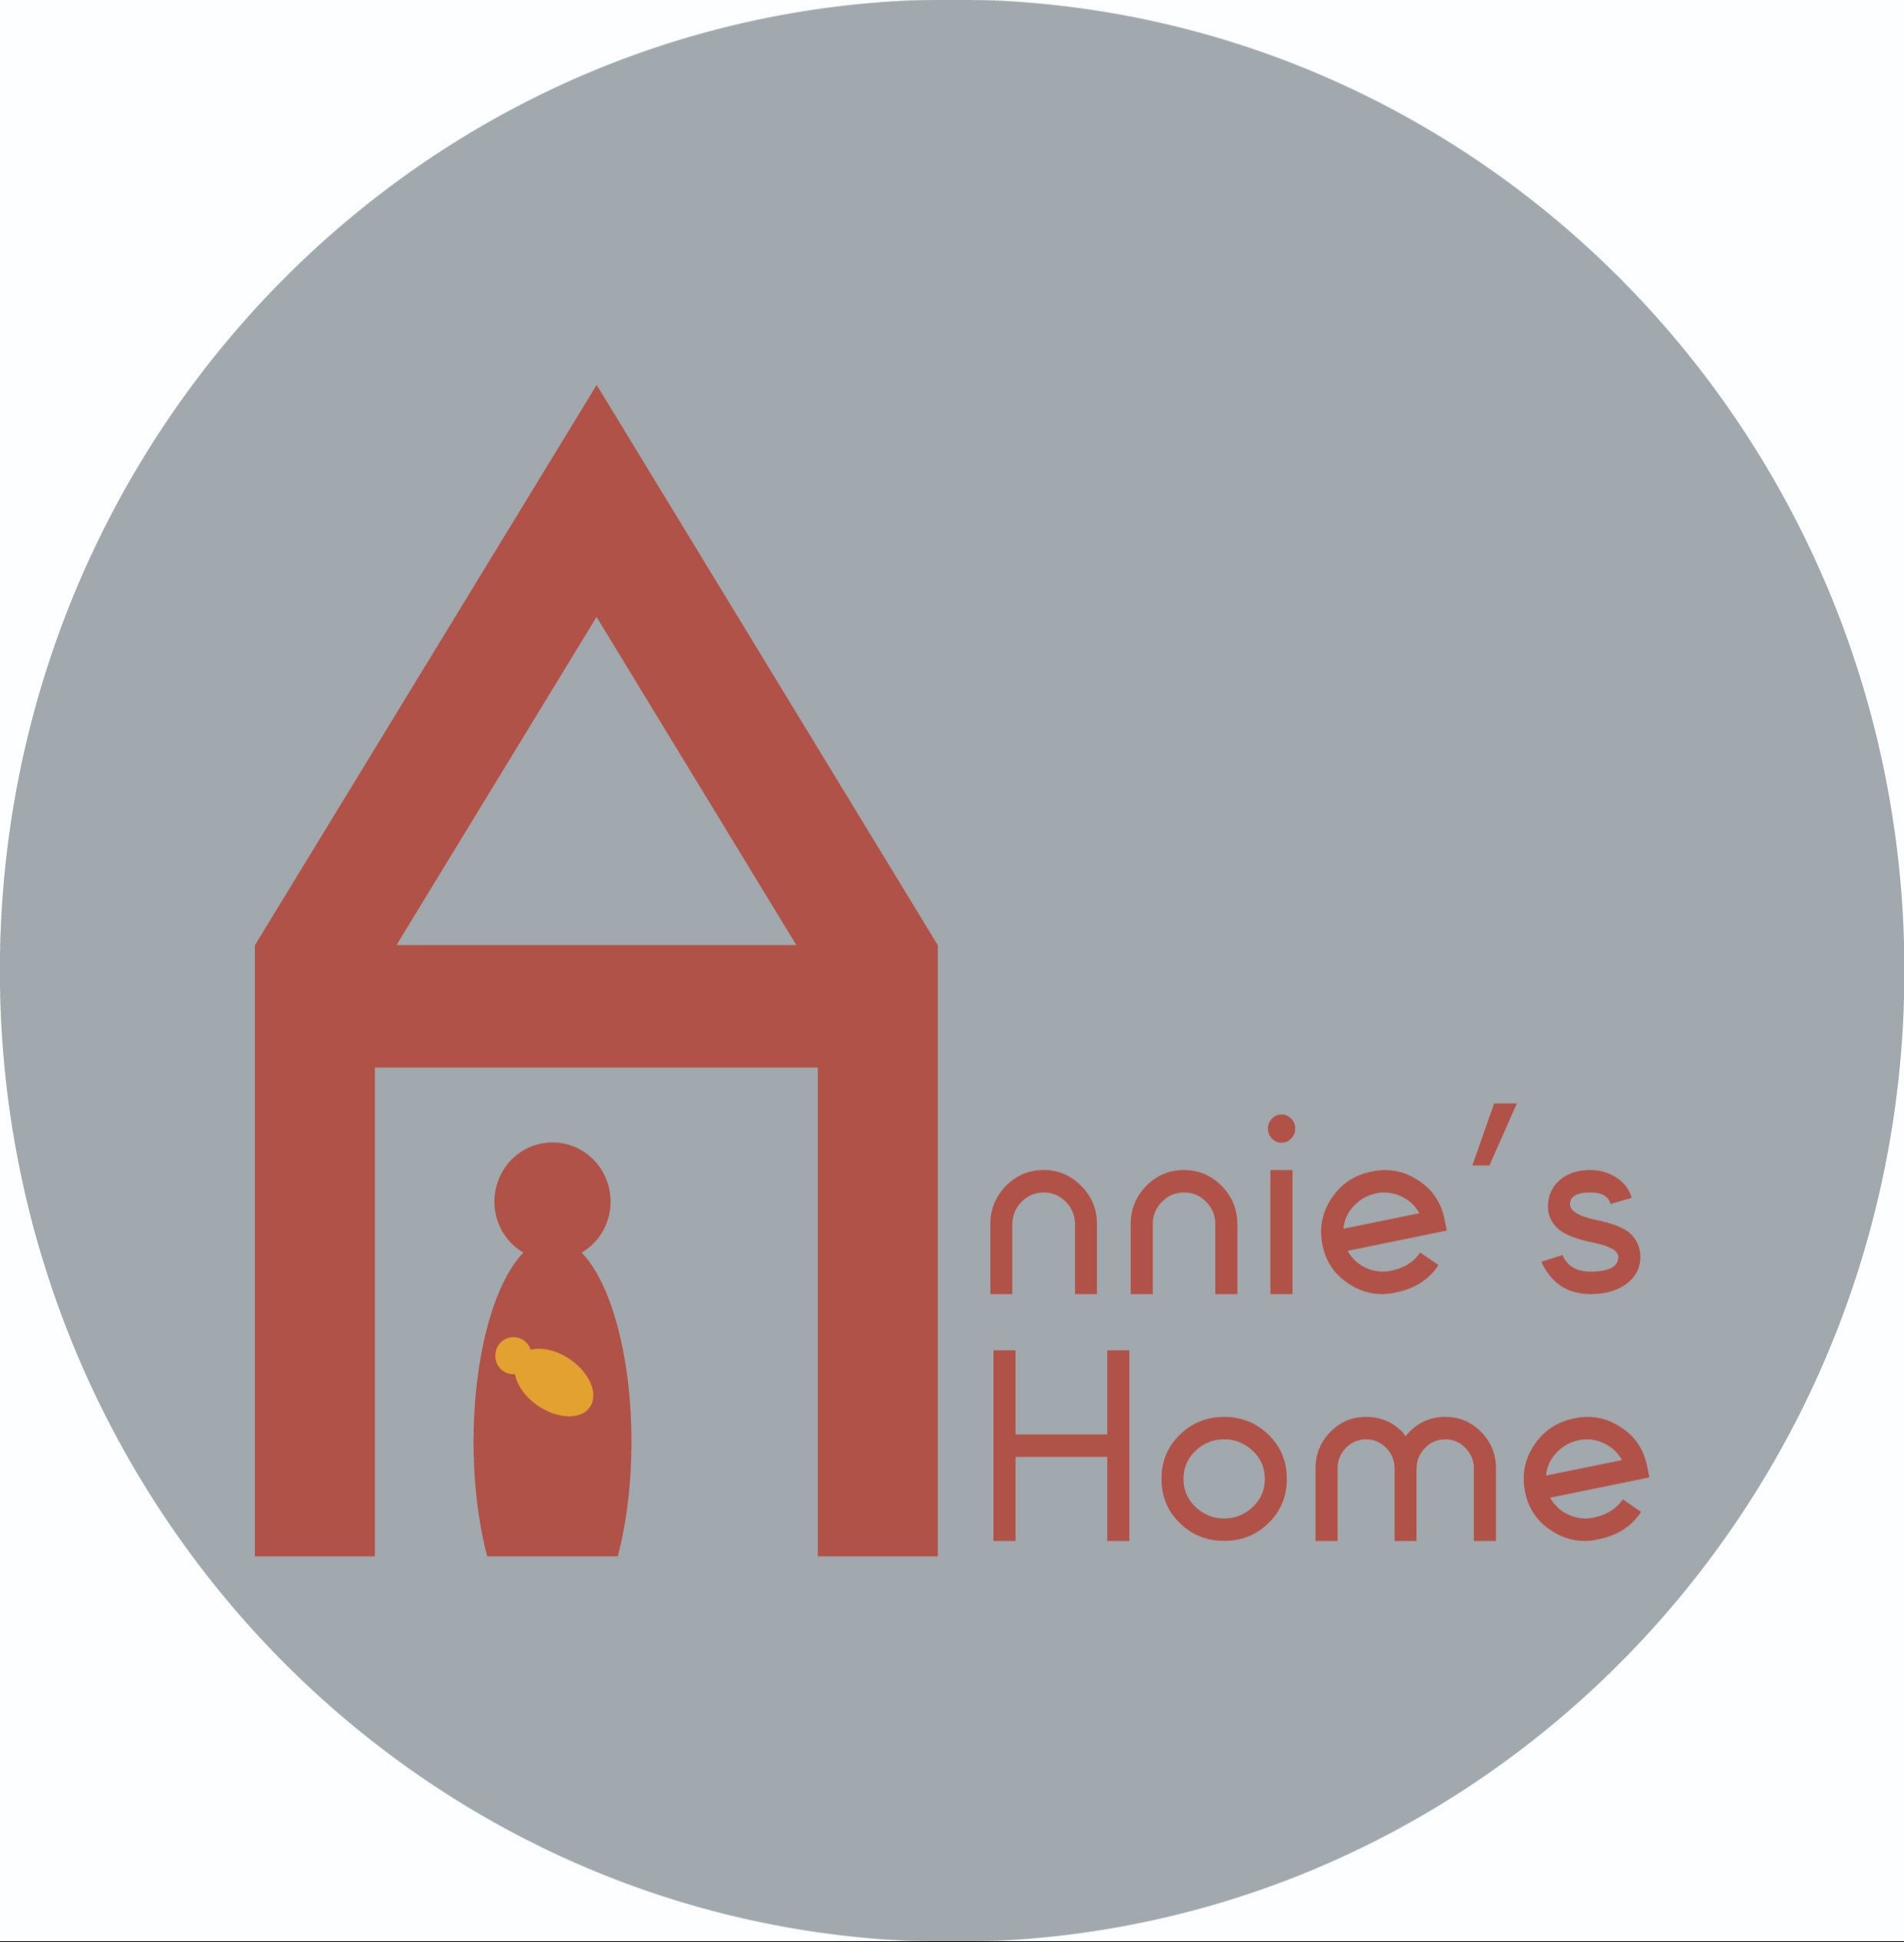 Annies Home logo